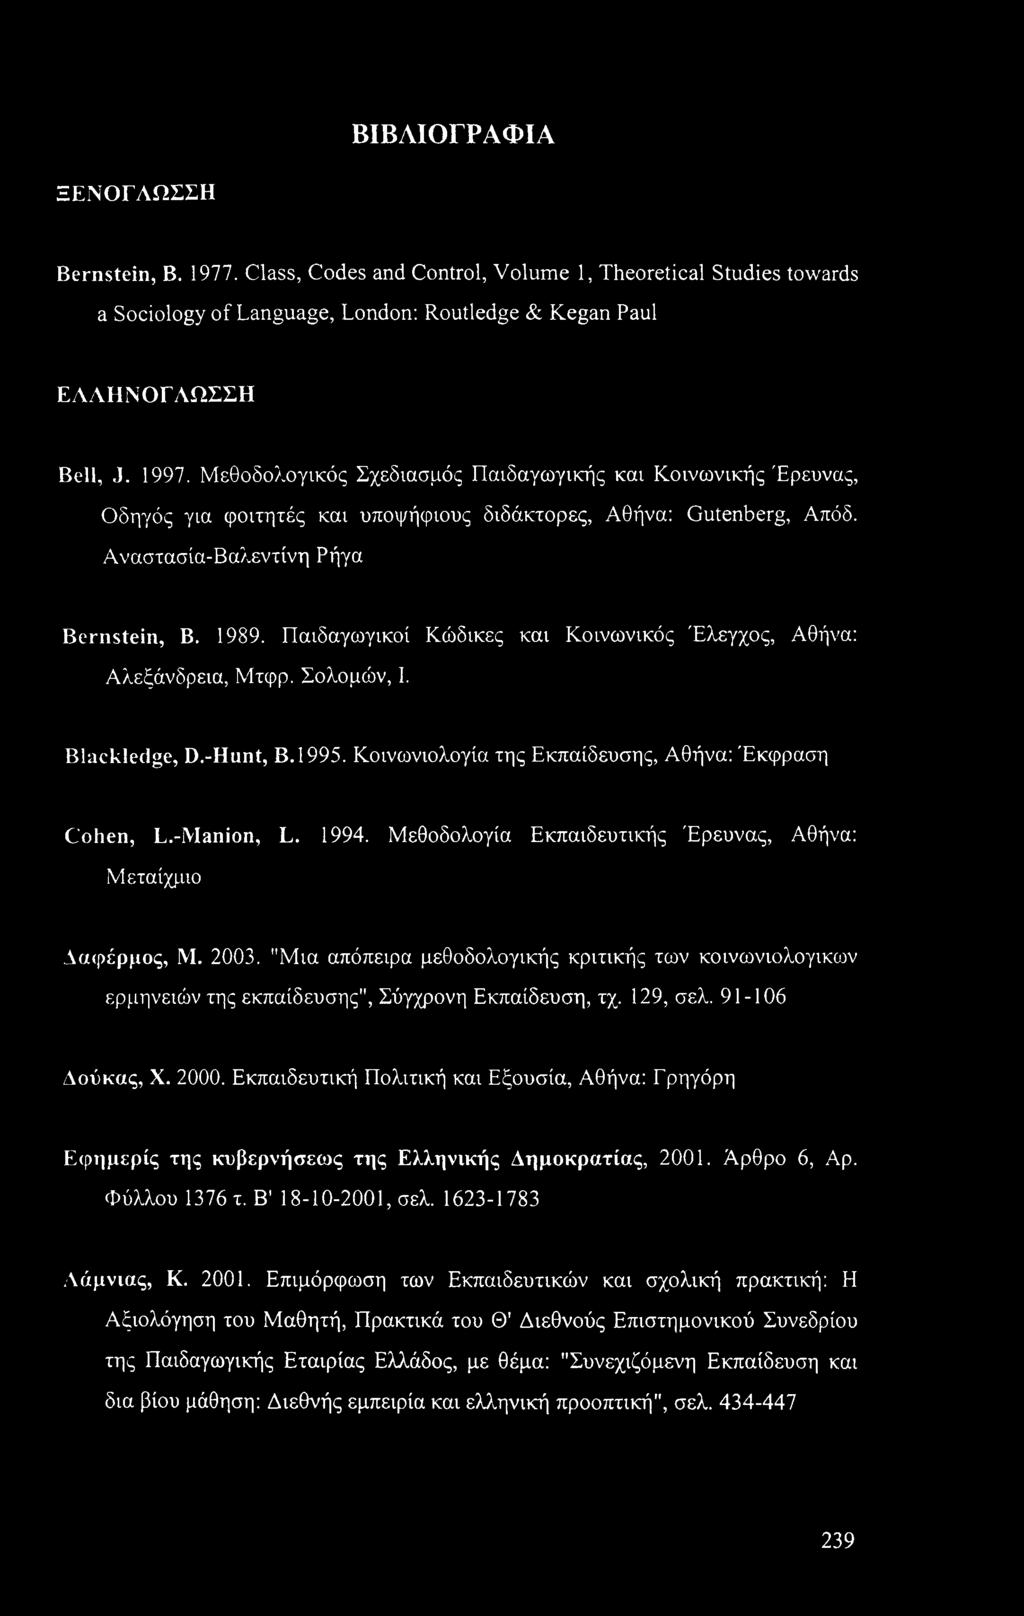 Παιδαγωγικοί Κώδικες και Κοινωνικός Έλεγχος, Αθήνα: Αλεξάνδρεια, Μτφρ. Σολομών, I. Blackledge, D.-Hunt, Β.1995. Κοινωνιολογία της Εκπαίδευσης, Αθήνα: Έκφραση Cohen, L.-Manion, L. 1994.